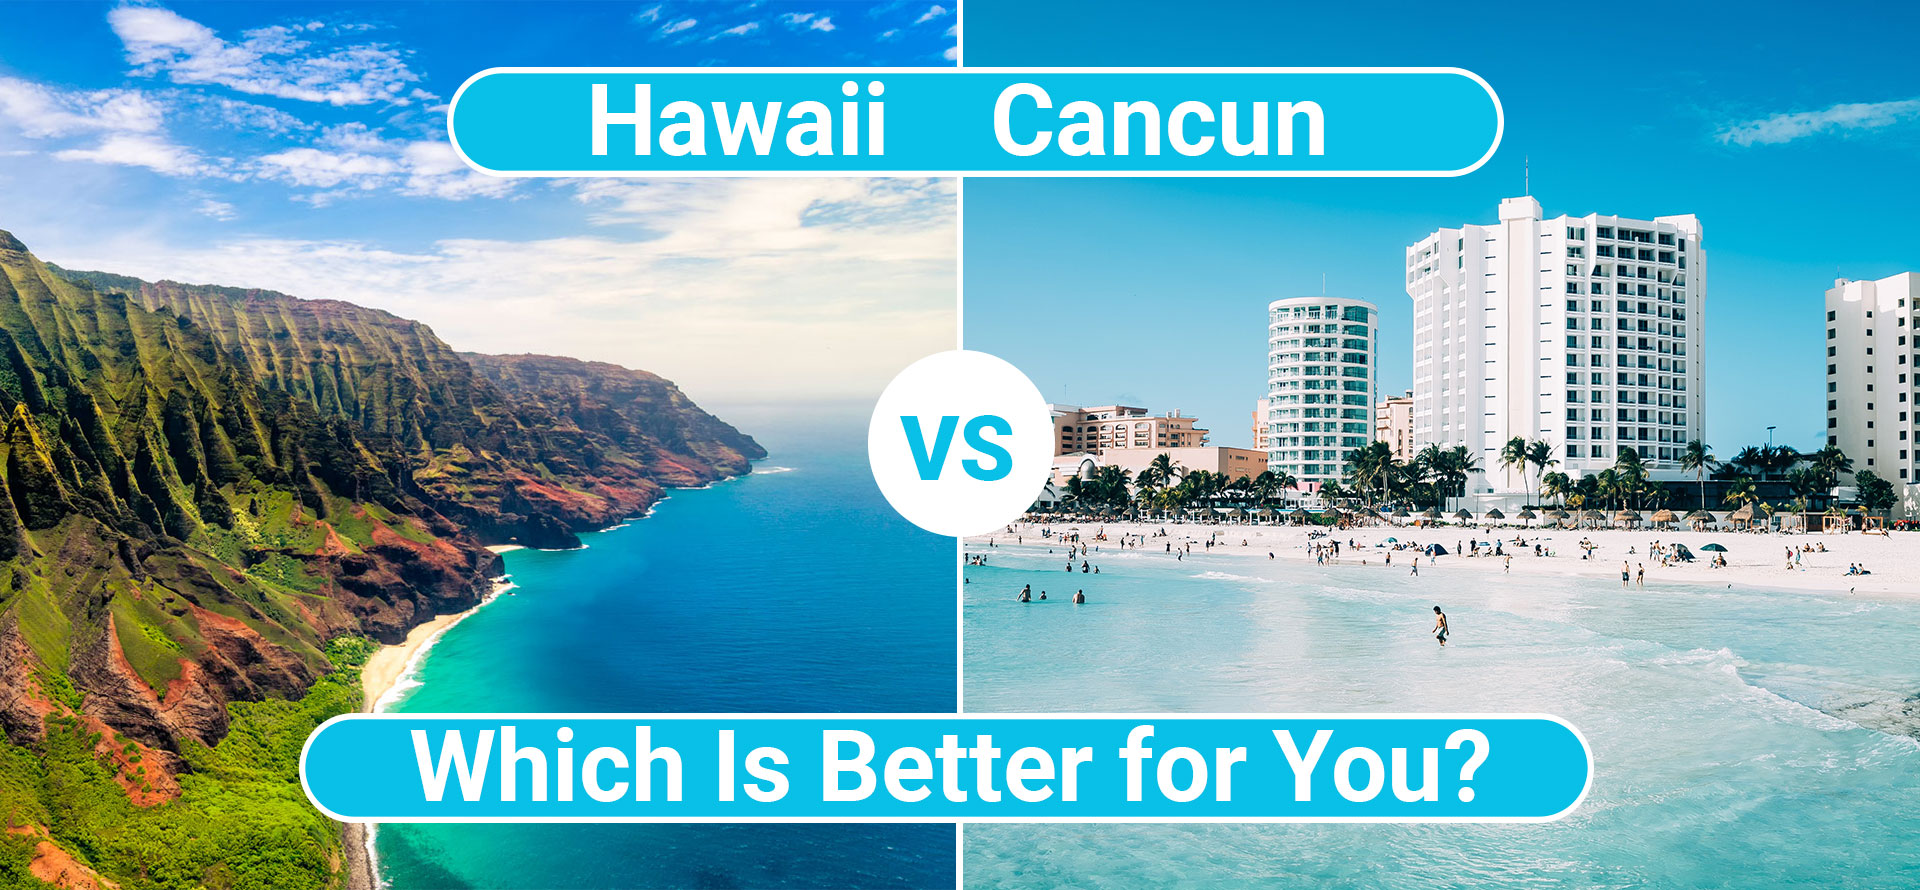 Hawaii vs cancun.